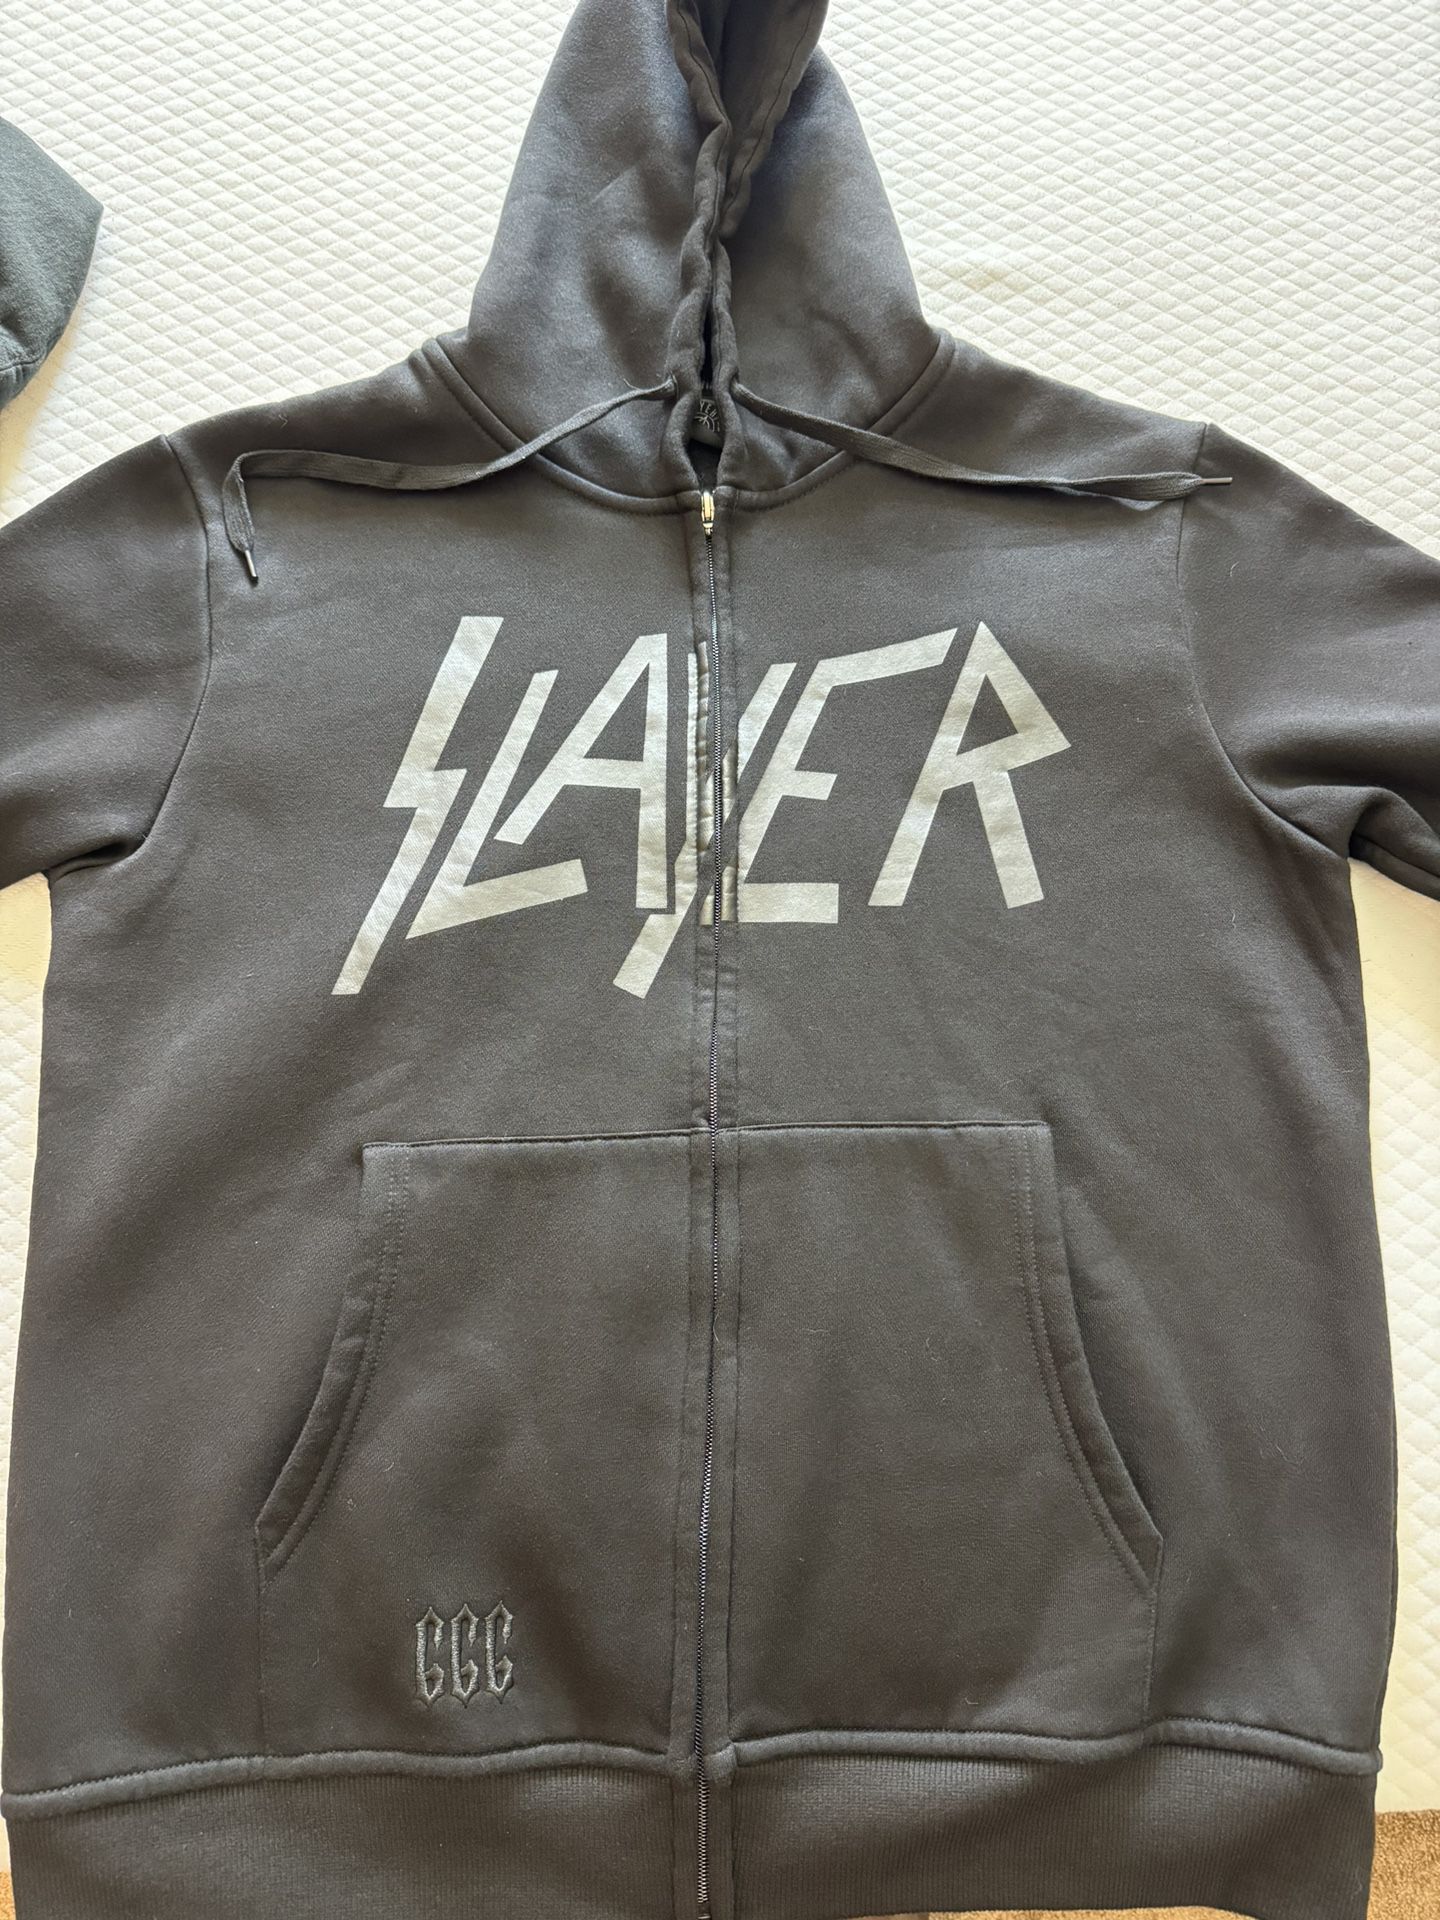 Slayer Sweatshirt. Nice 